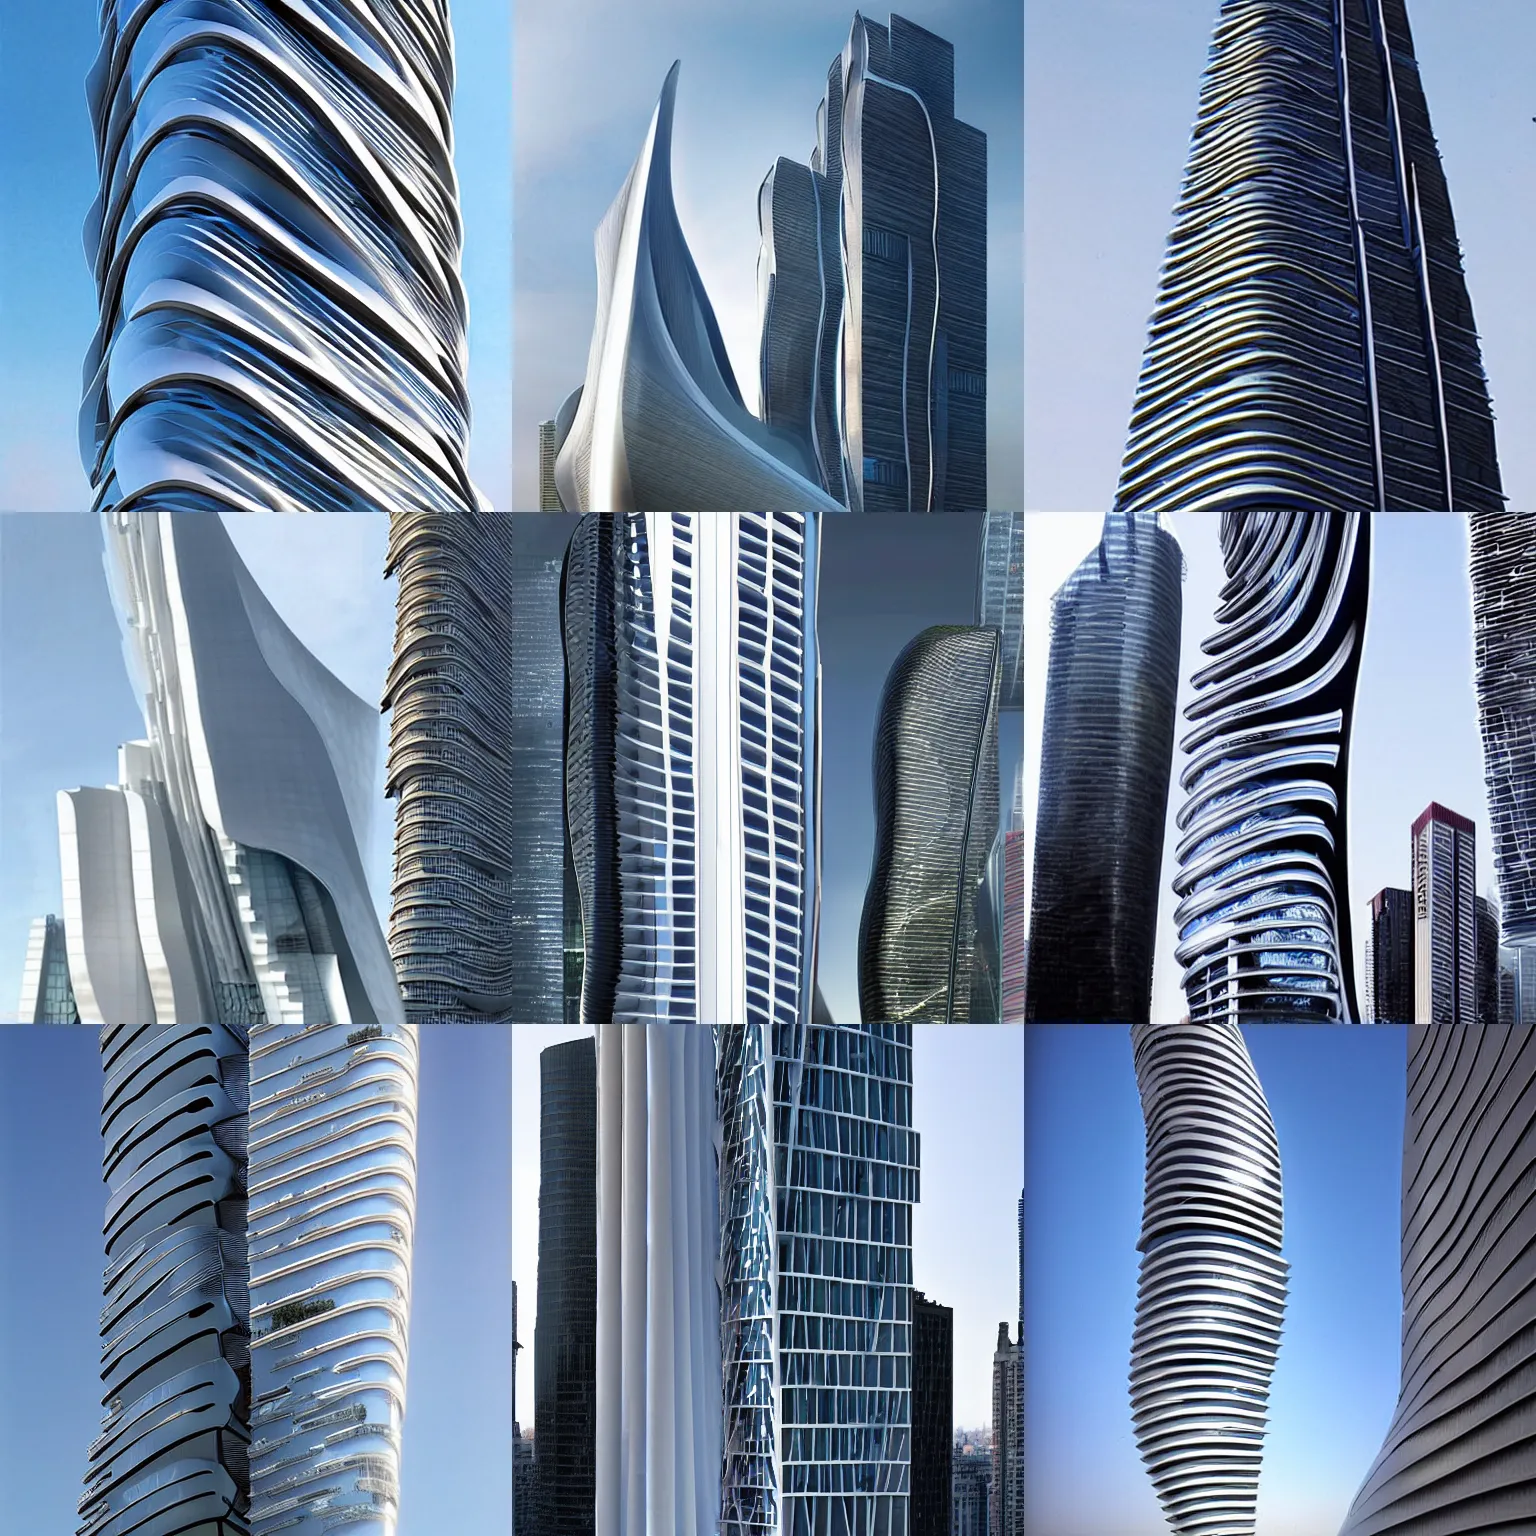 Prompt: skyscraper designed by zaha hadid